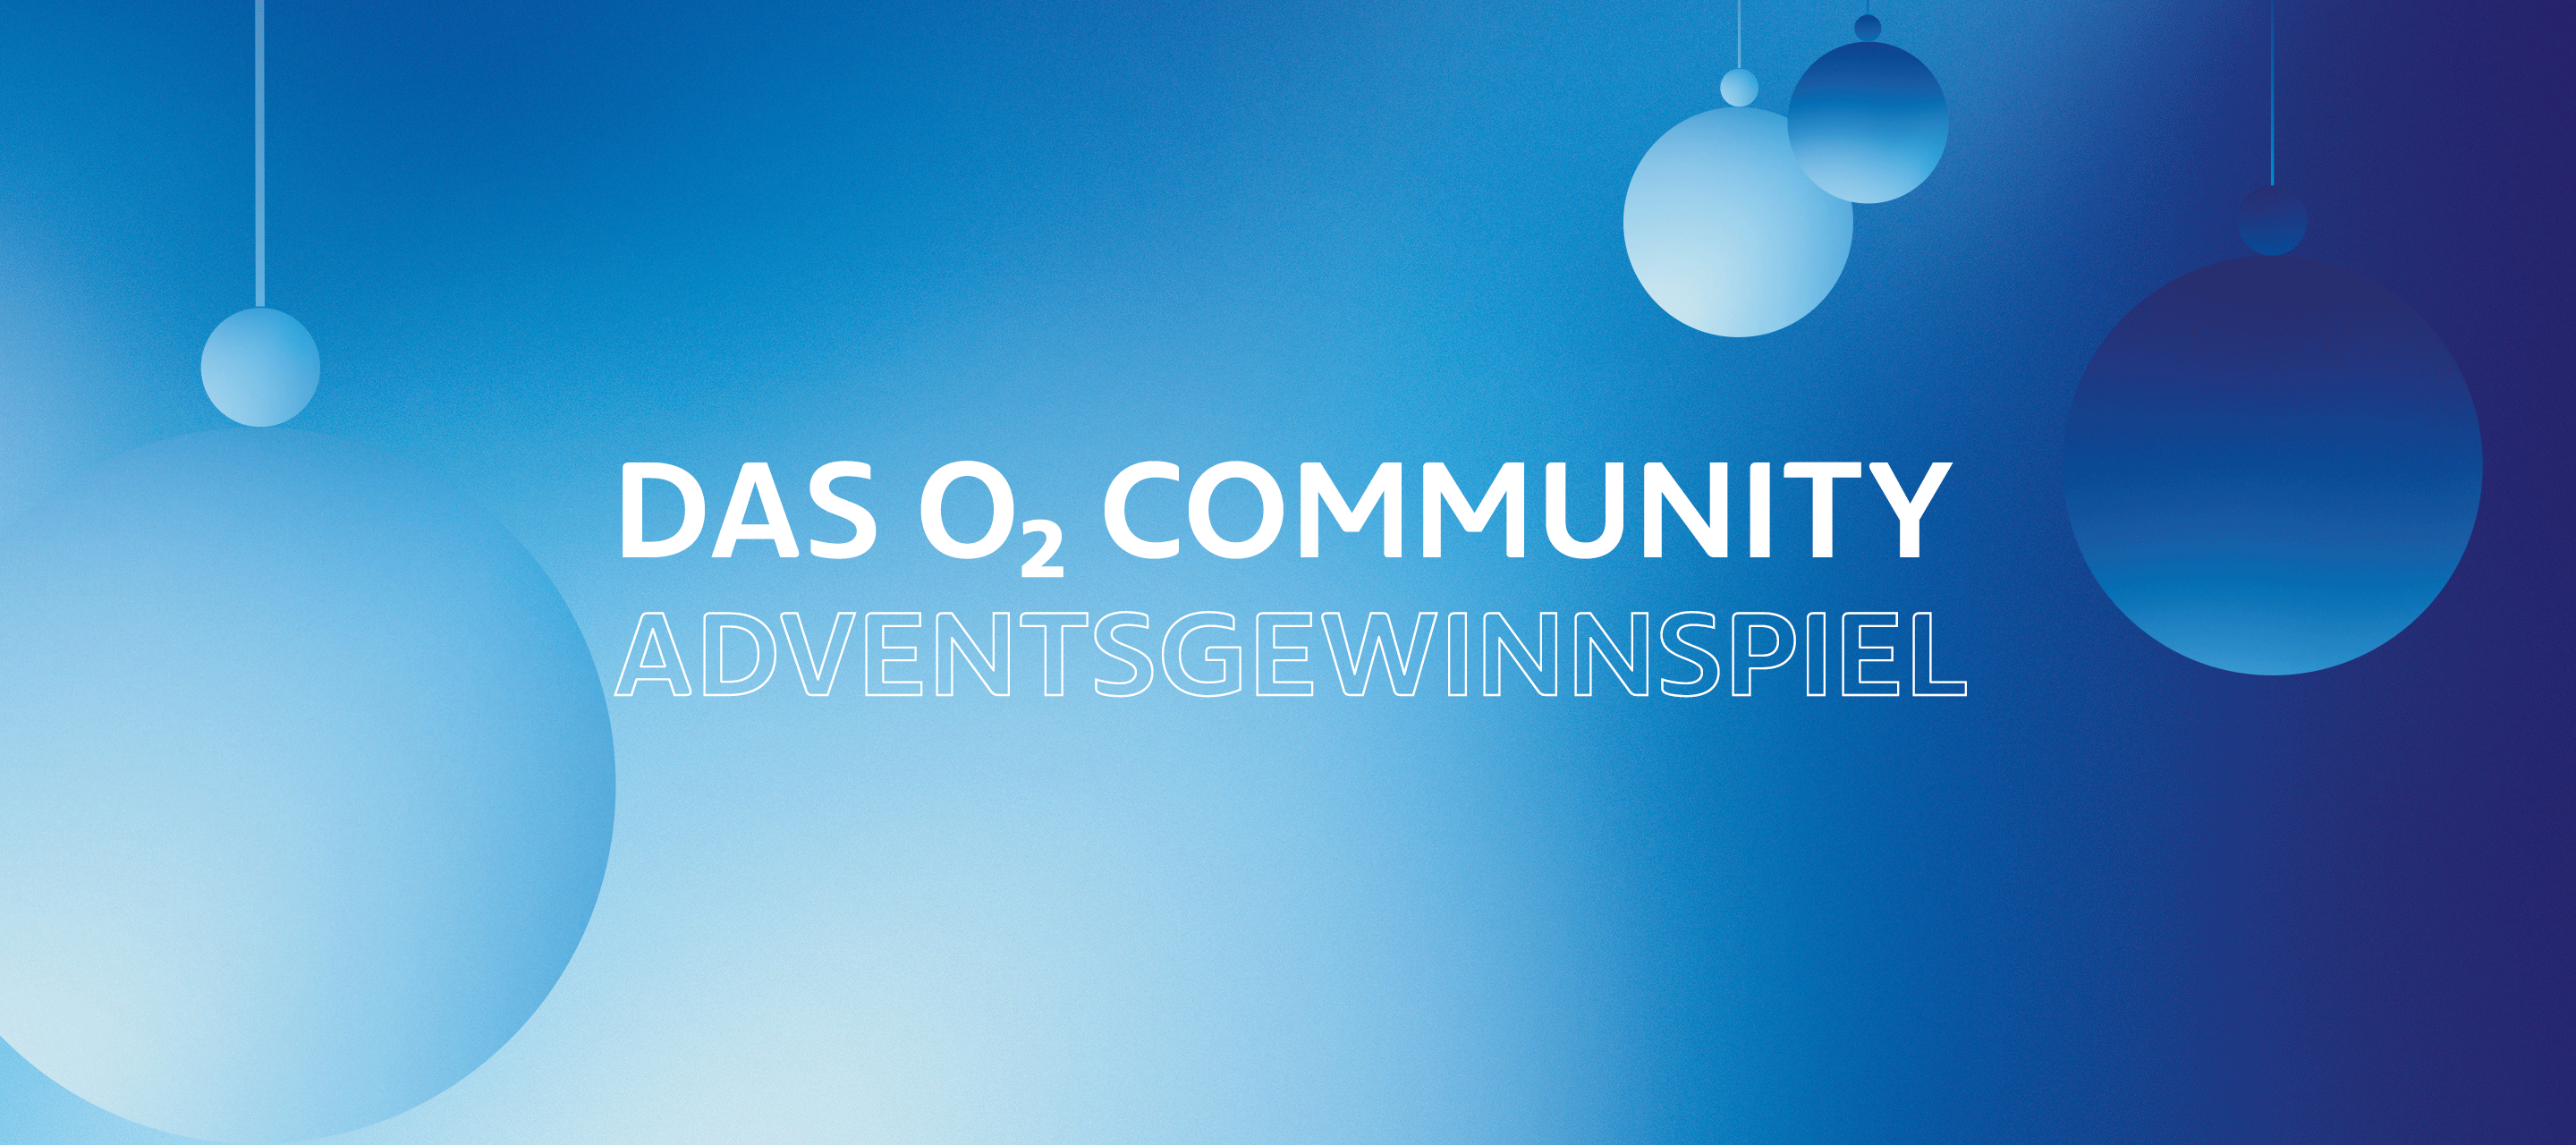 Mit unserer O₂ Community durch die Weihnachtszeit: Das Community Adventsgewinnspiel 2022